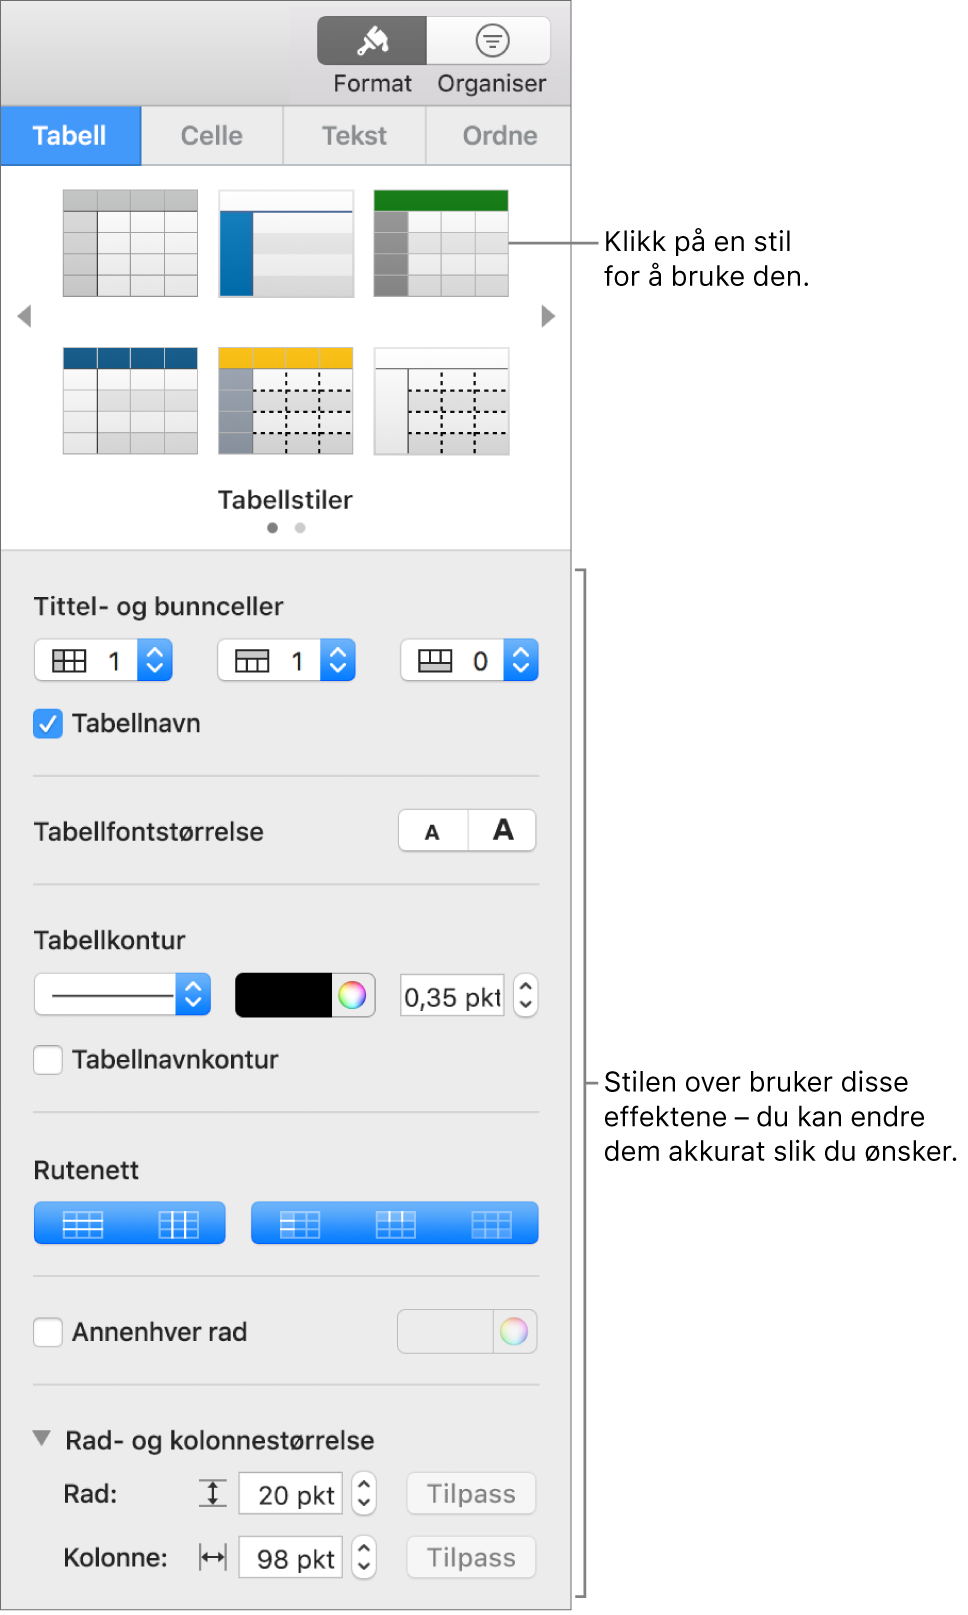 Format-sidepanelet, som viser tabellstiler og formateringsvalg.